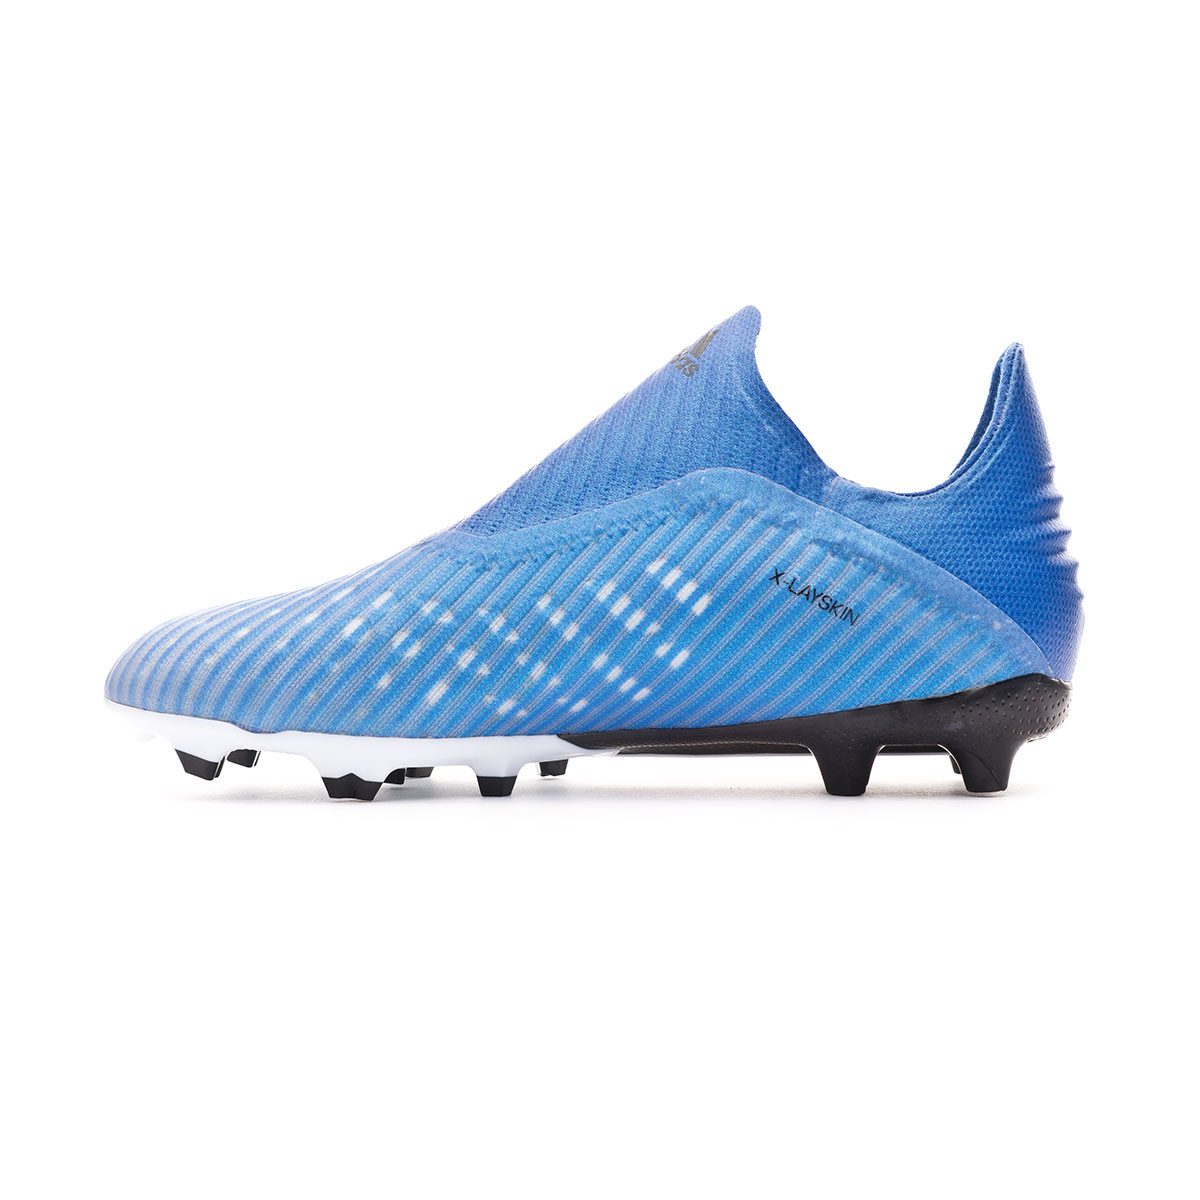 Football Boots adidas X 19+ FG Niño Team royal blue-White-Core black -  Football store Fútbol Emotion